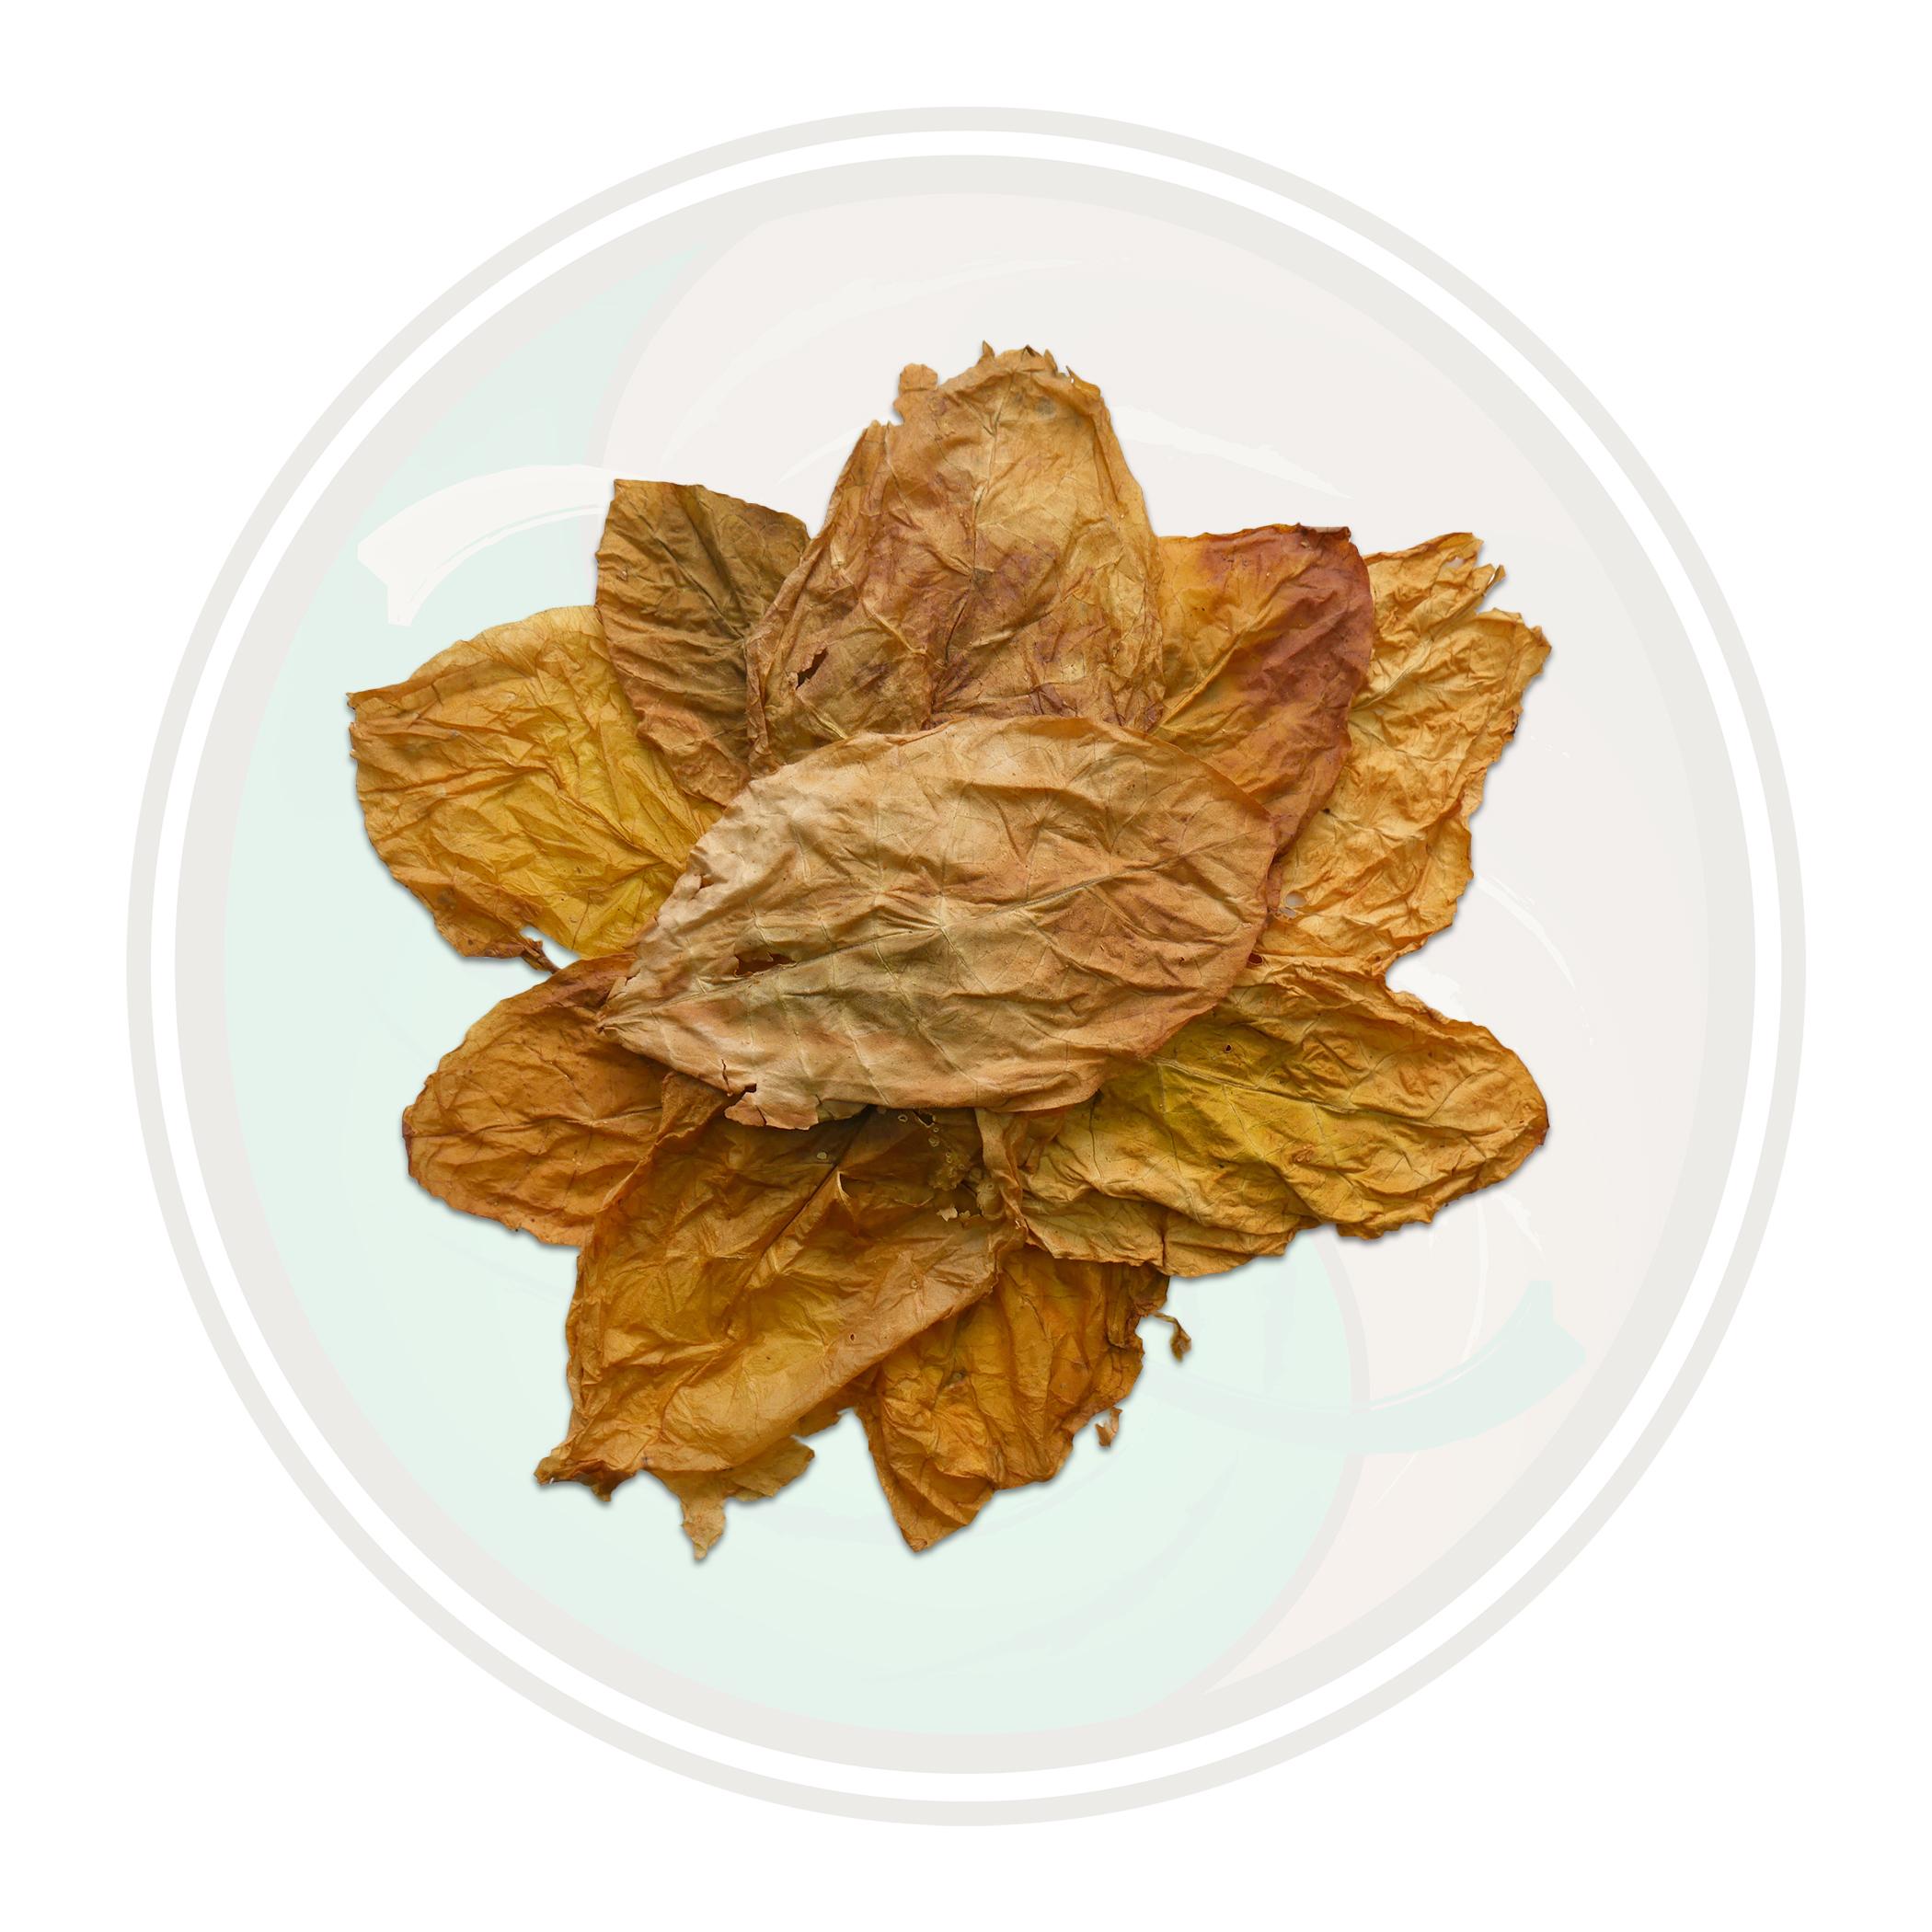 Krumovgrad Oriental Tobacco Roll Your Own Whole Leaf Tobacco Leaf Only